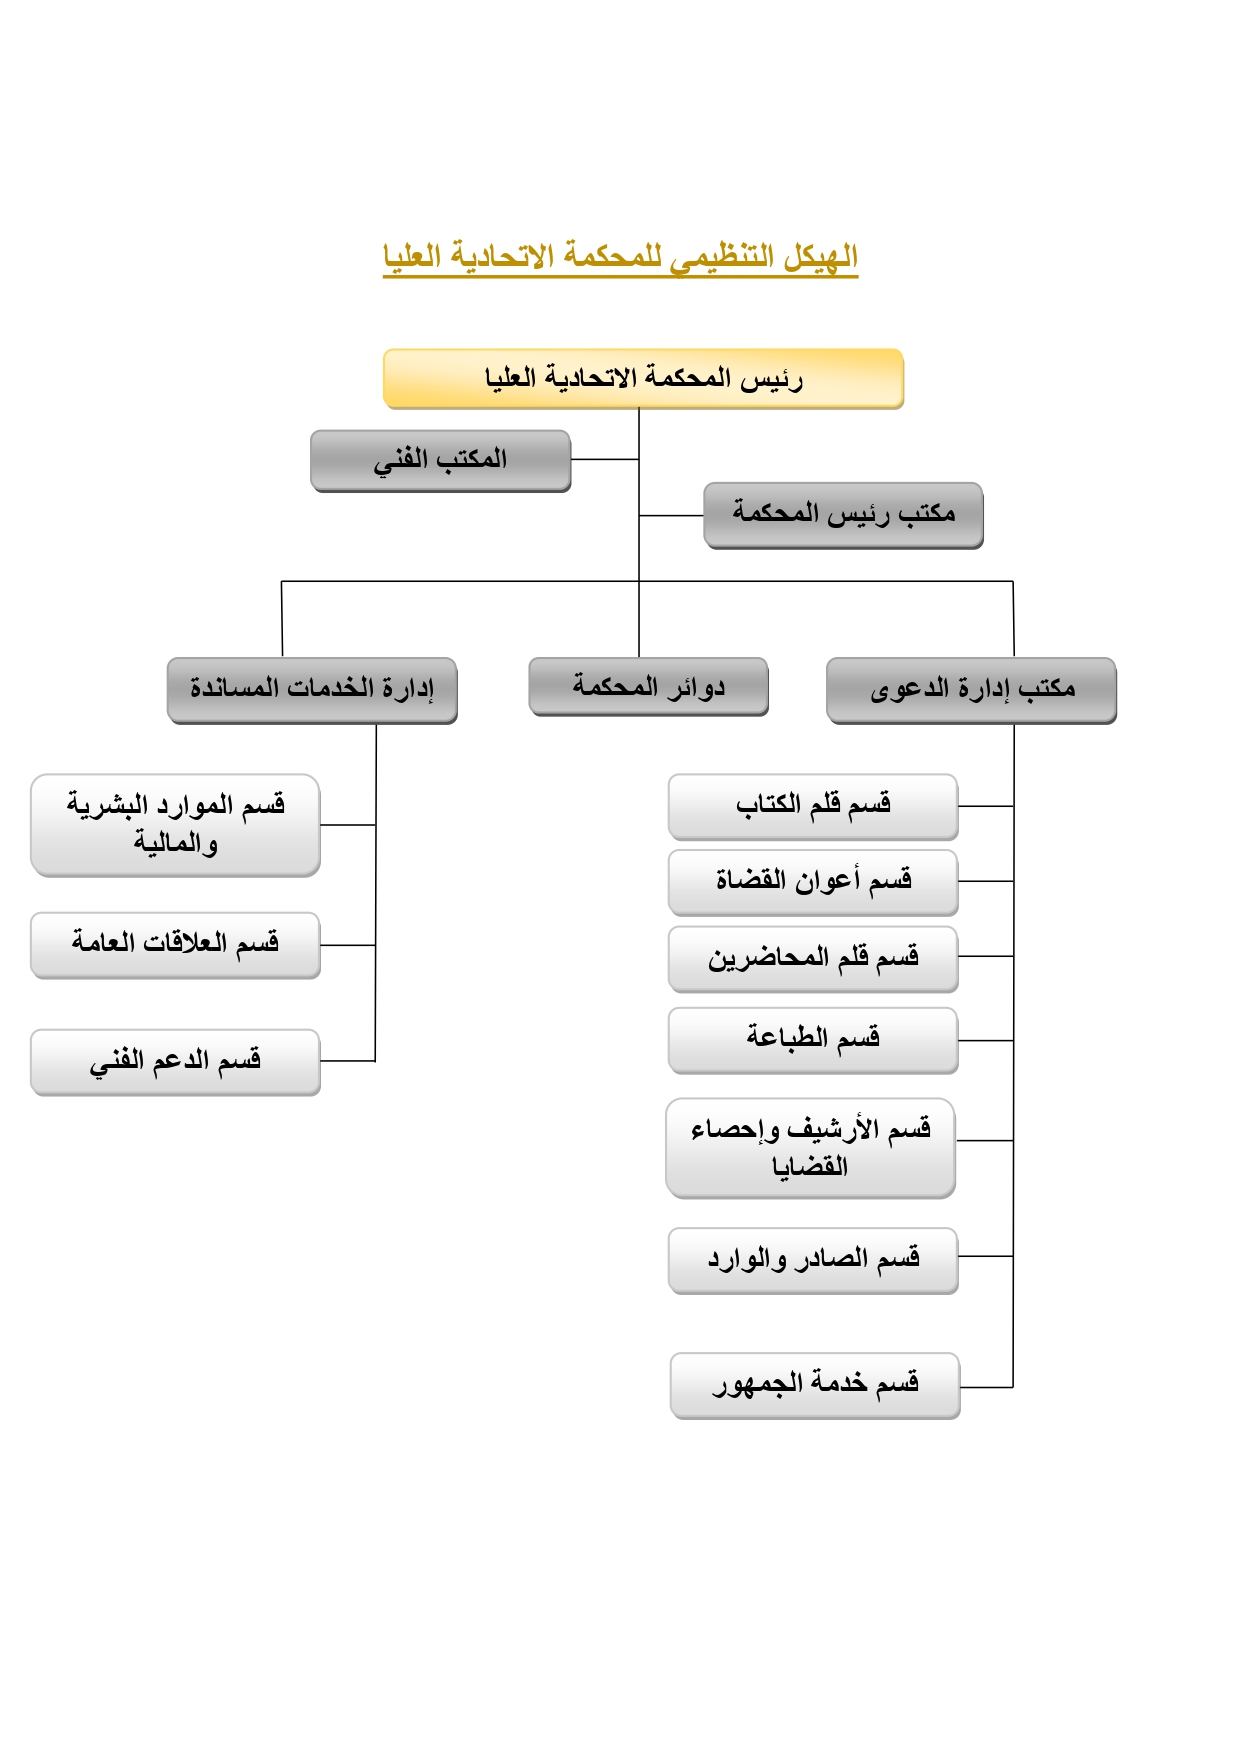 الهيكل التنظيمي | عن المحكمة | المحكمة الاتحادية العليا | عن الوزارة | وزارة  العدل -الإمارات العربية المتحدة